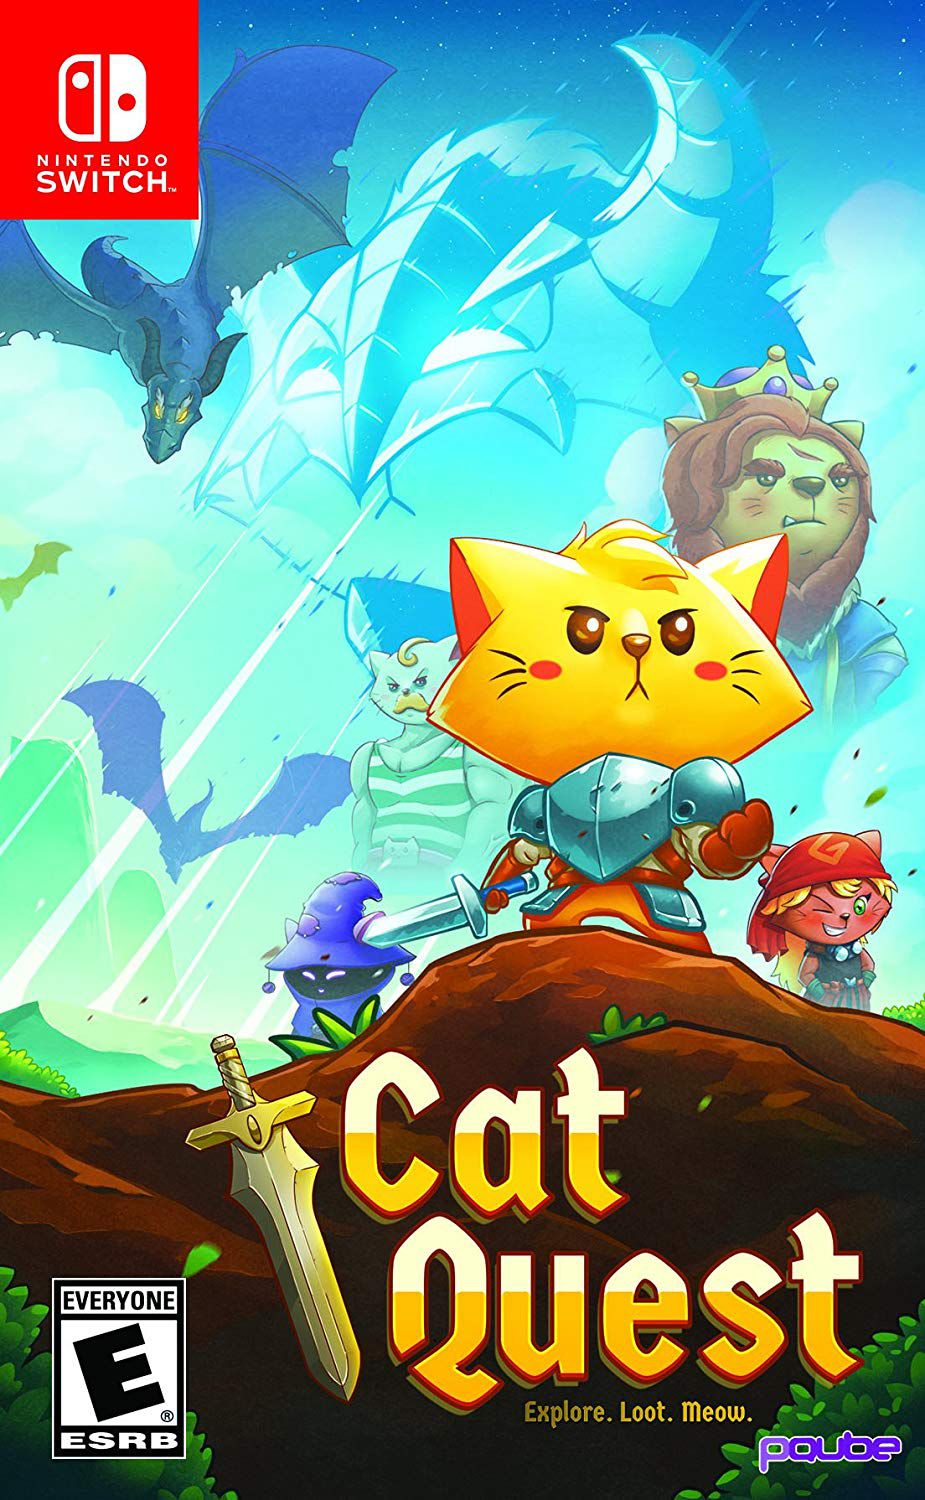 Meow Meow Life no Jogos 360